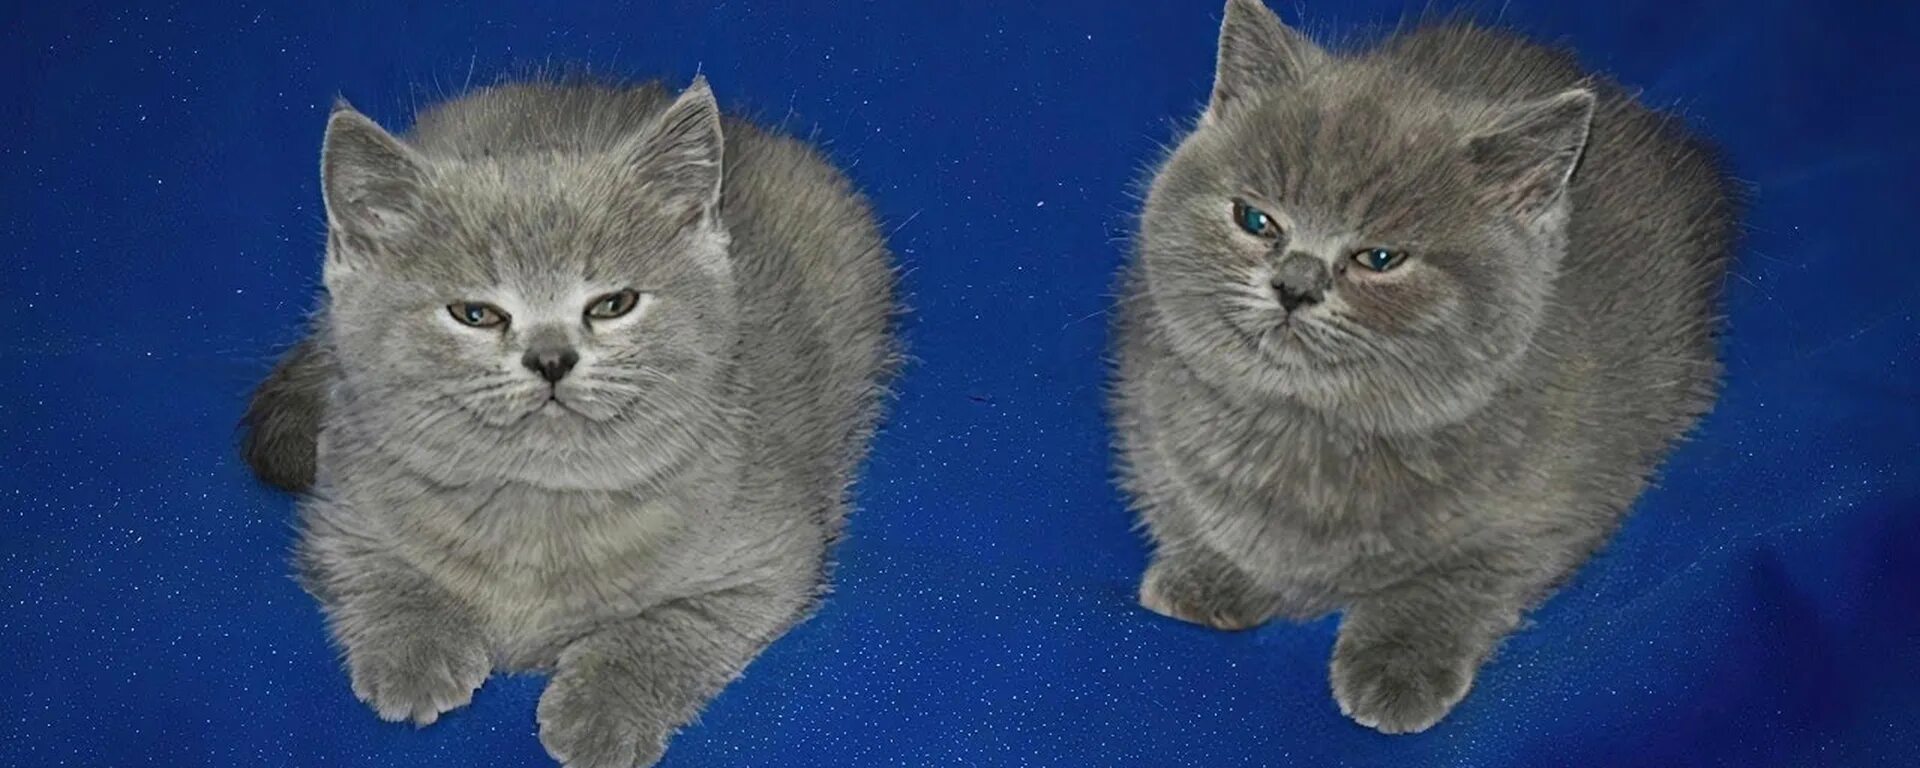 Серые котята на синем фоне. Британские голубые котята. Два голубых британских кота. Два котёнка на синем фоне.